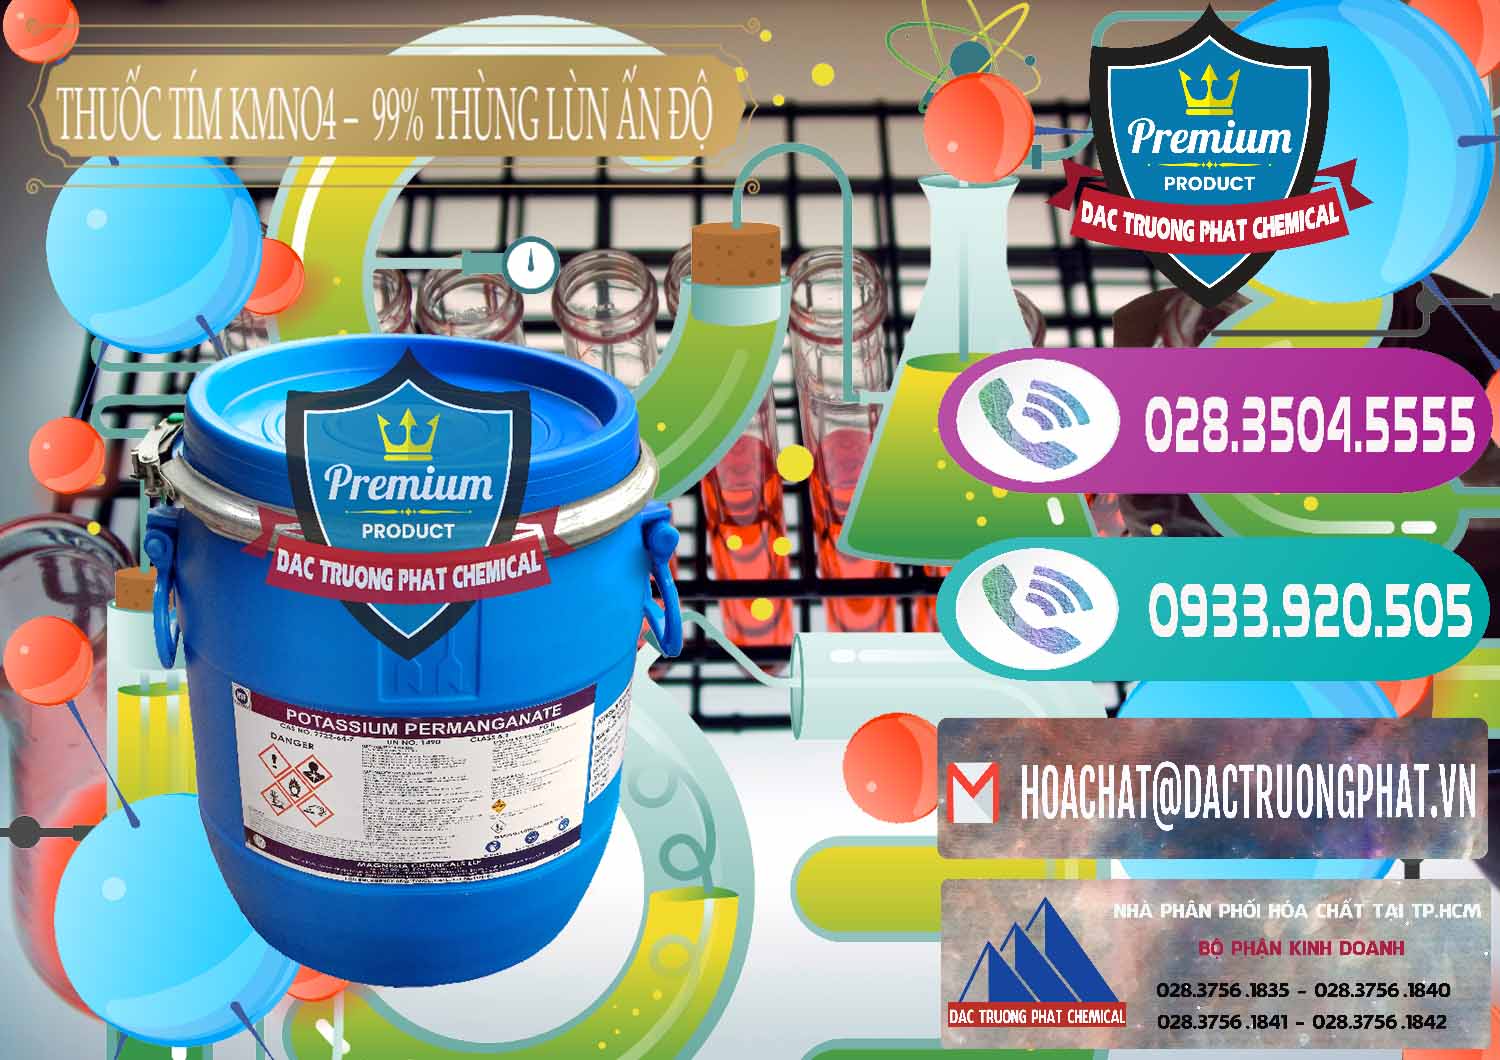 Chuyên bán - cung cấp Thuốc Tím - KMNO4 Thùng Lùn 99% Magnesia Chemicals Ấn Độ India - 0165 - Đơn vị bán ( cung cấp ) hóa chất tại TP.HCM - hoachatxulynuoc.com